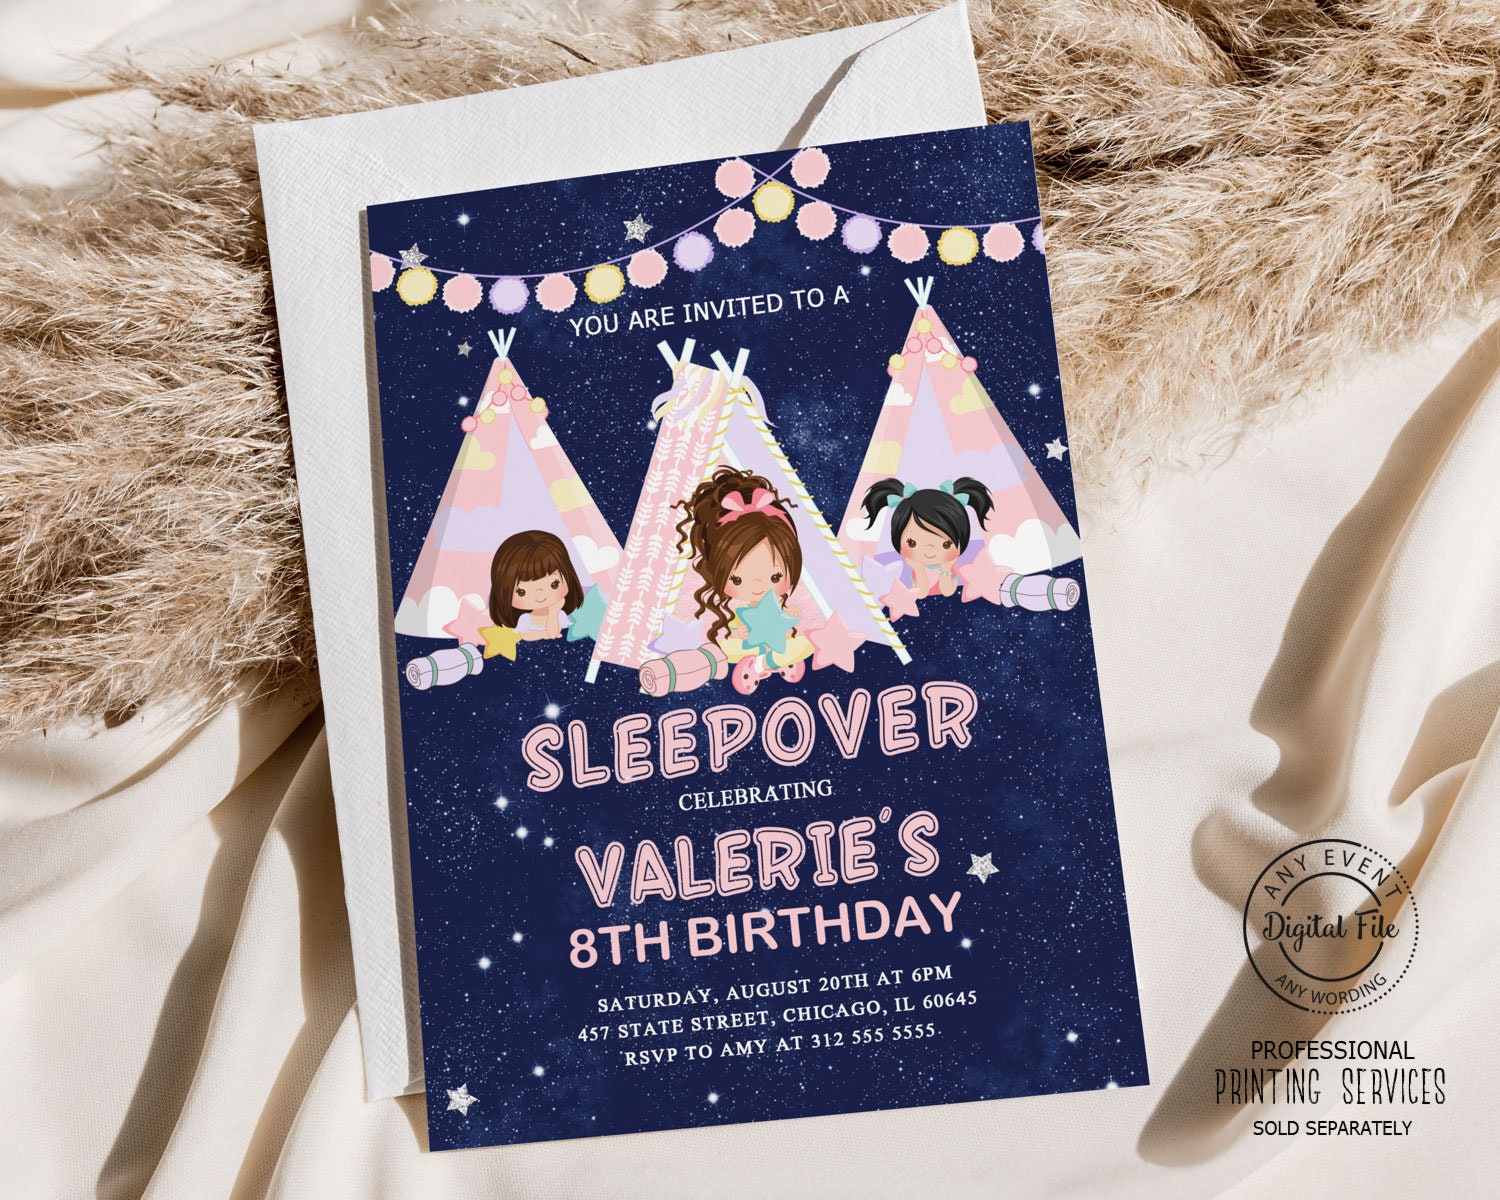 UDNADKEX Sleepover Birthday Invitations Girl with Envelopes, Invites for  Girls Birthday Party Glamping, Slumber Pajama Birthday Party Invitations